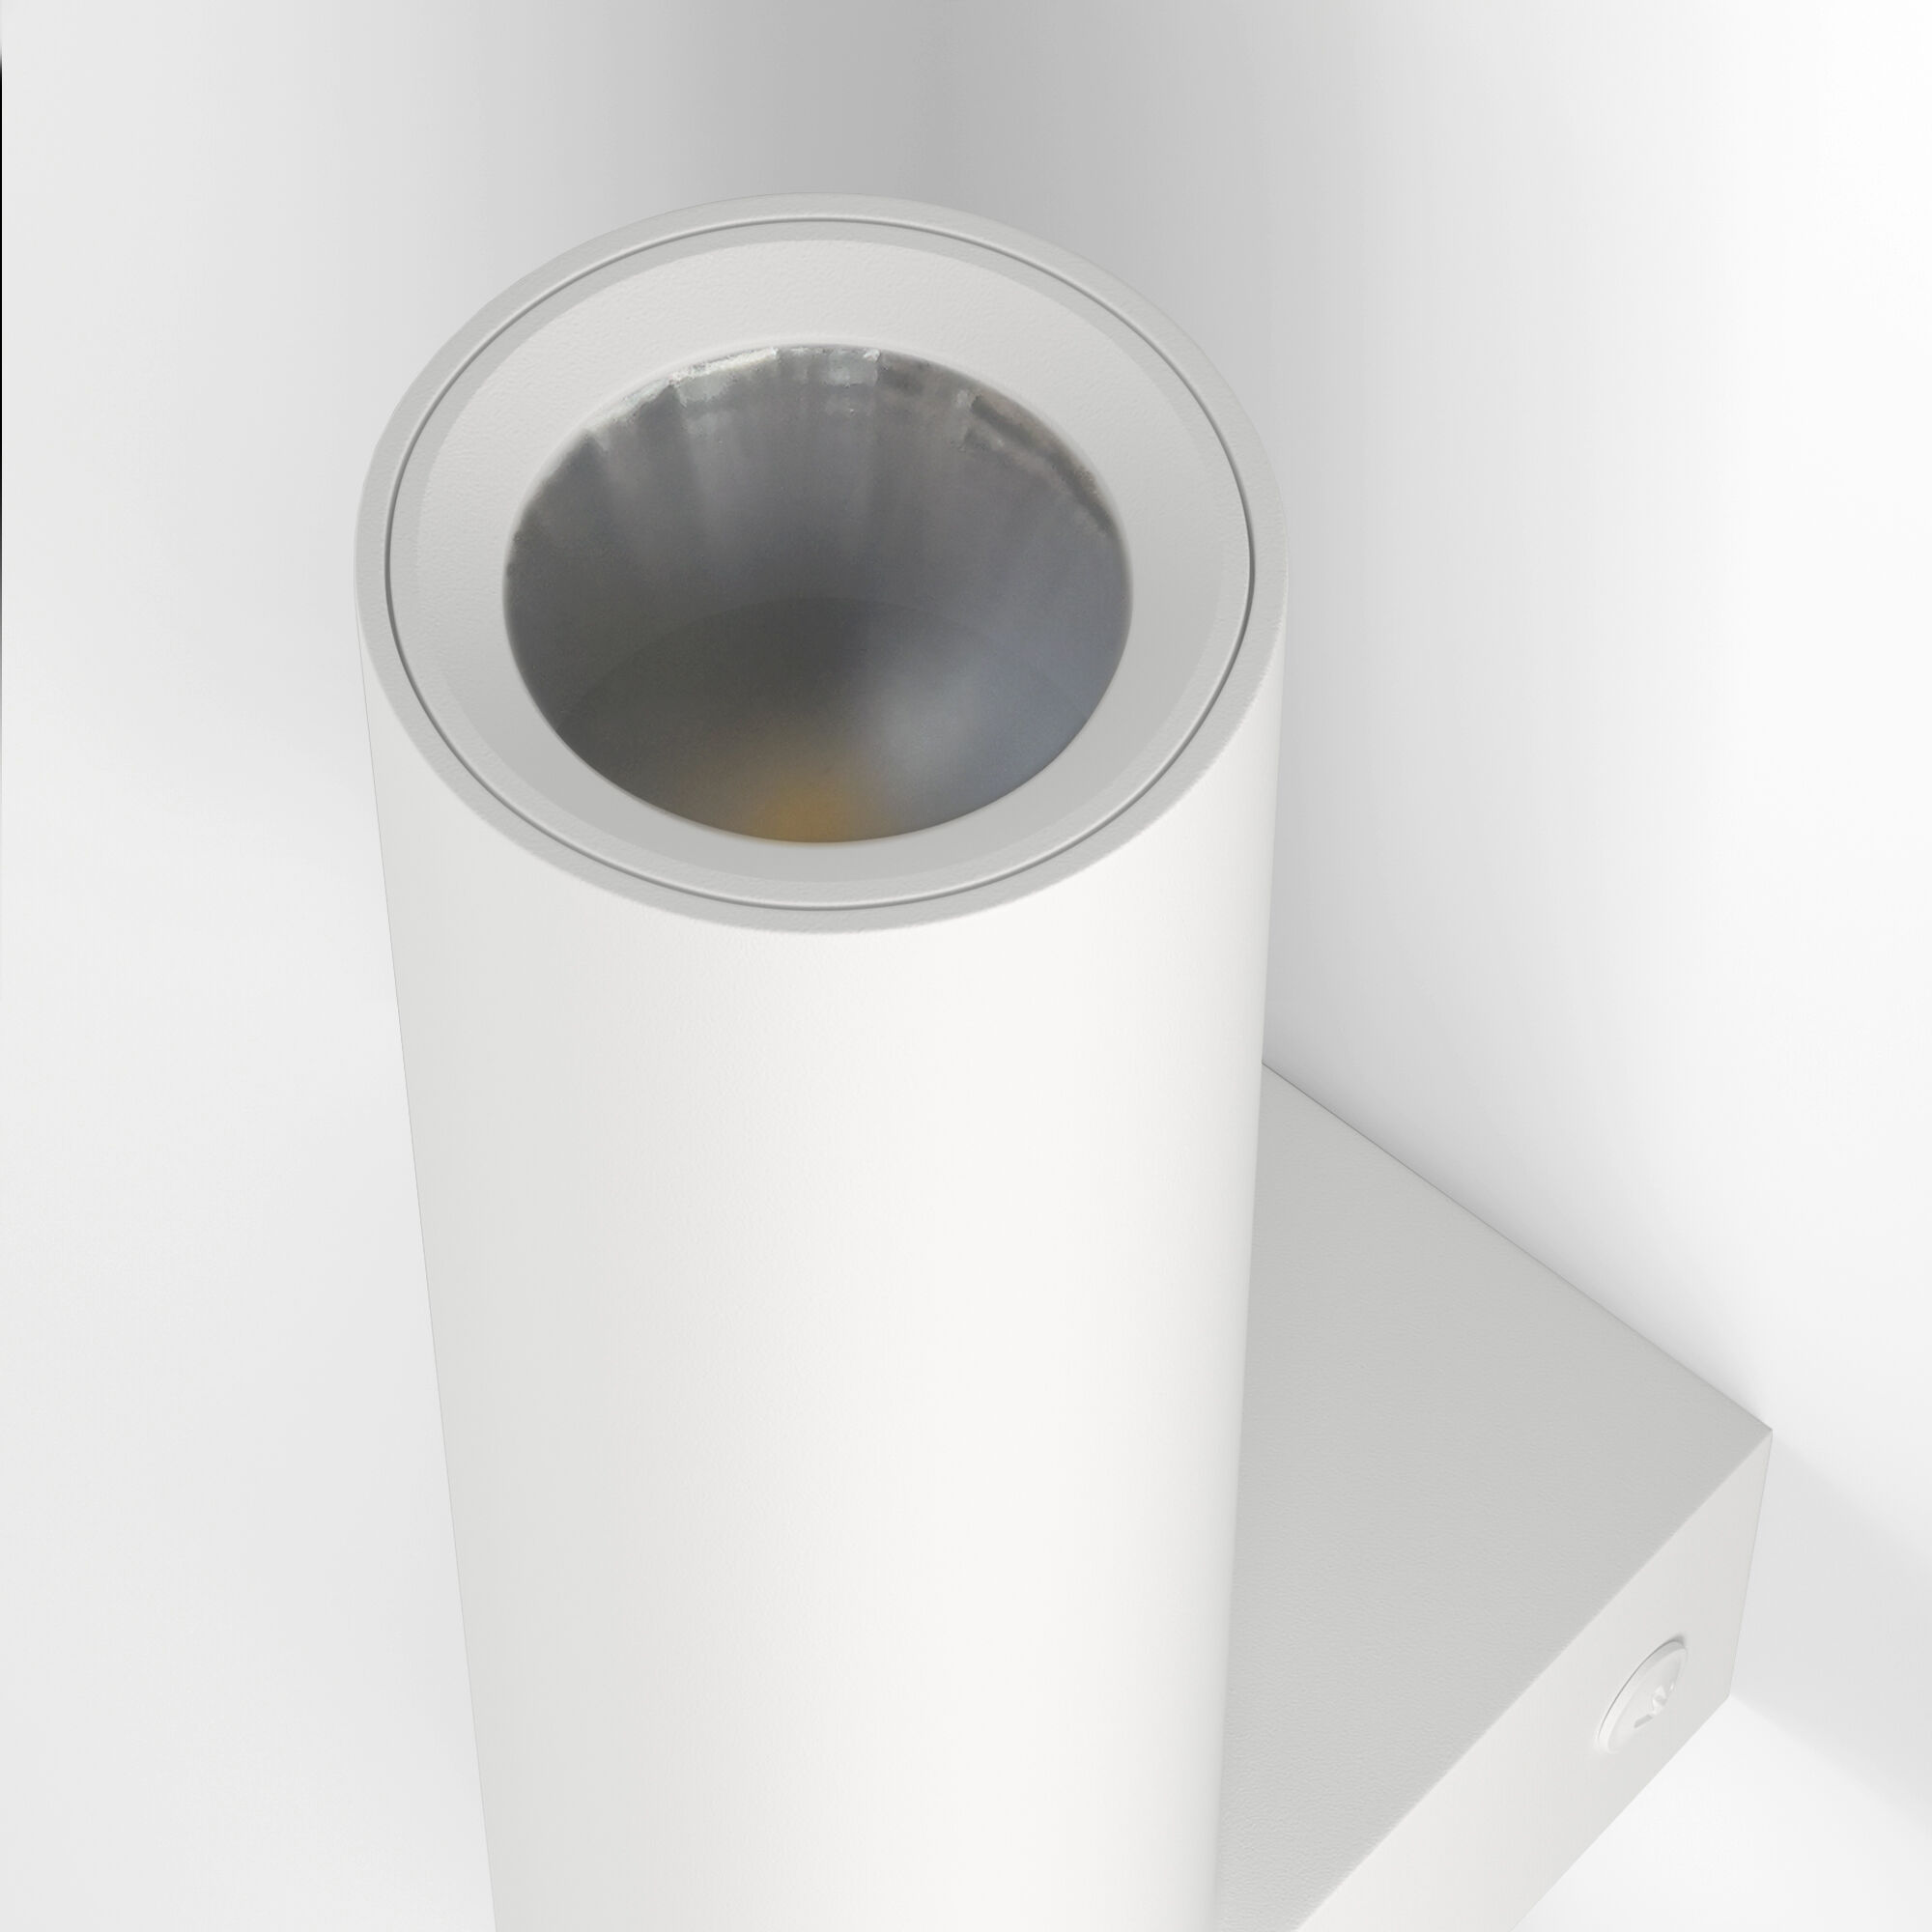 Настенный светильник Eurosvet Pitch a061313 40020/1 LED белый/хром фото